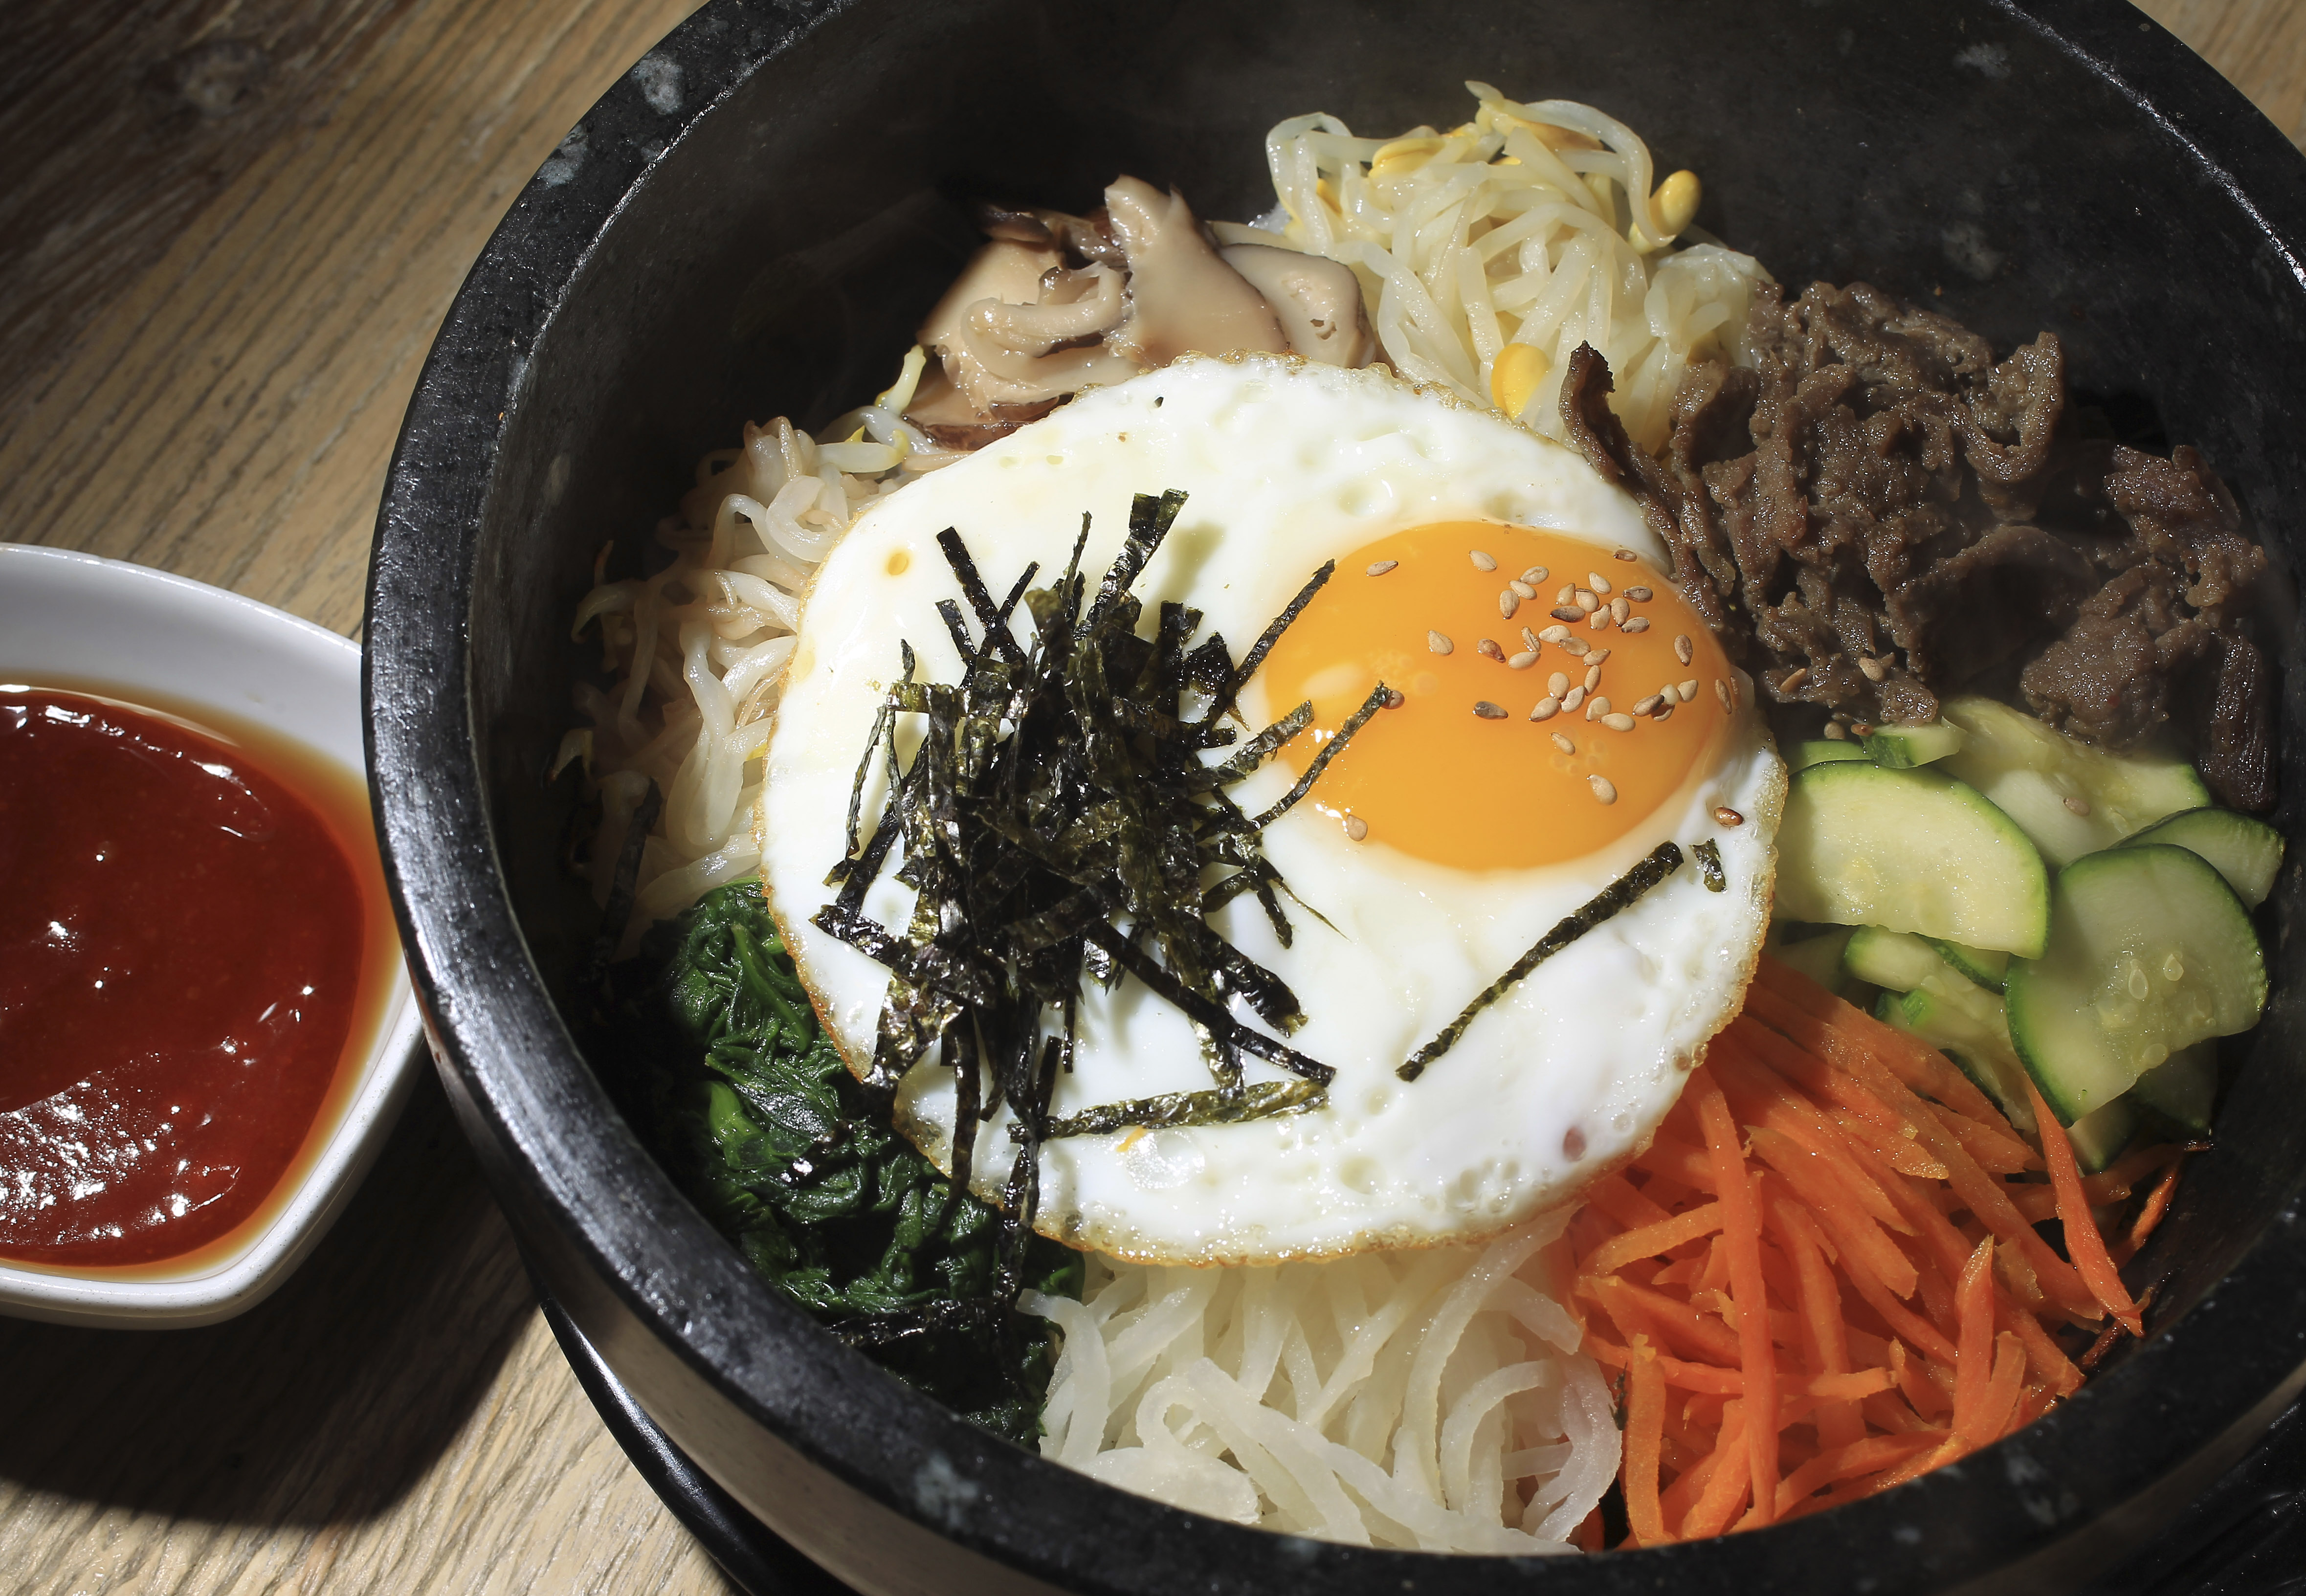 Where to Eat Korean Food in Boston